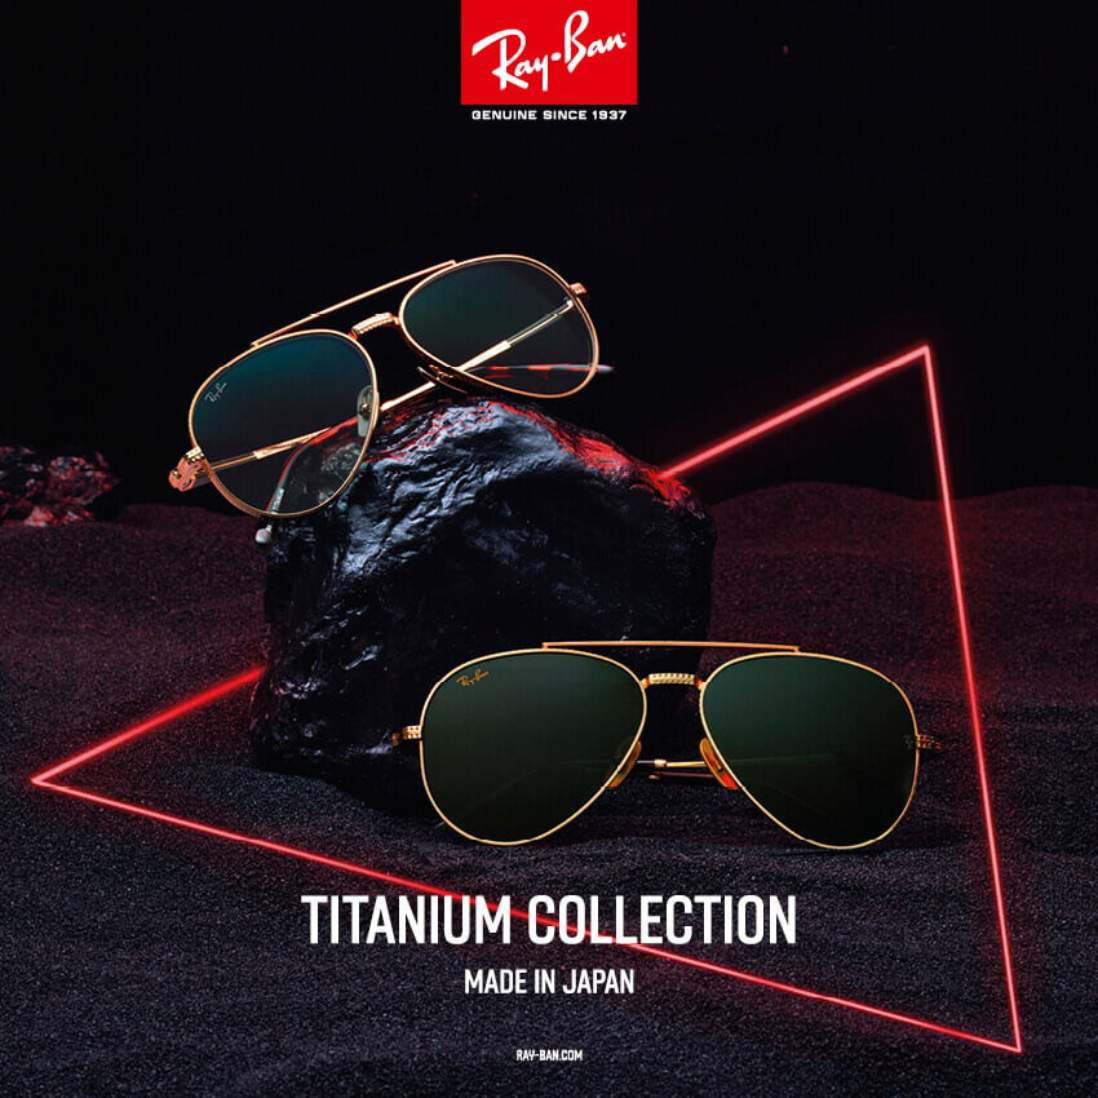 Ray-Ban titanium collection